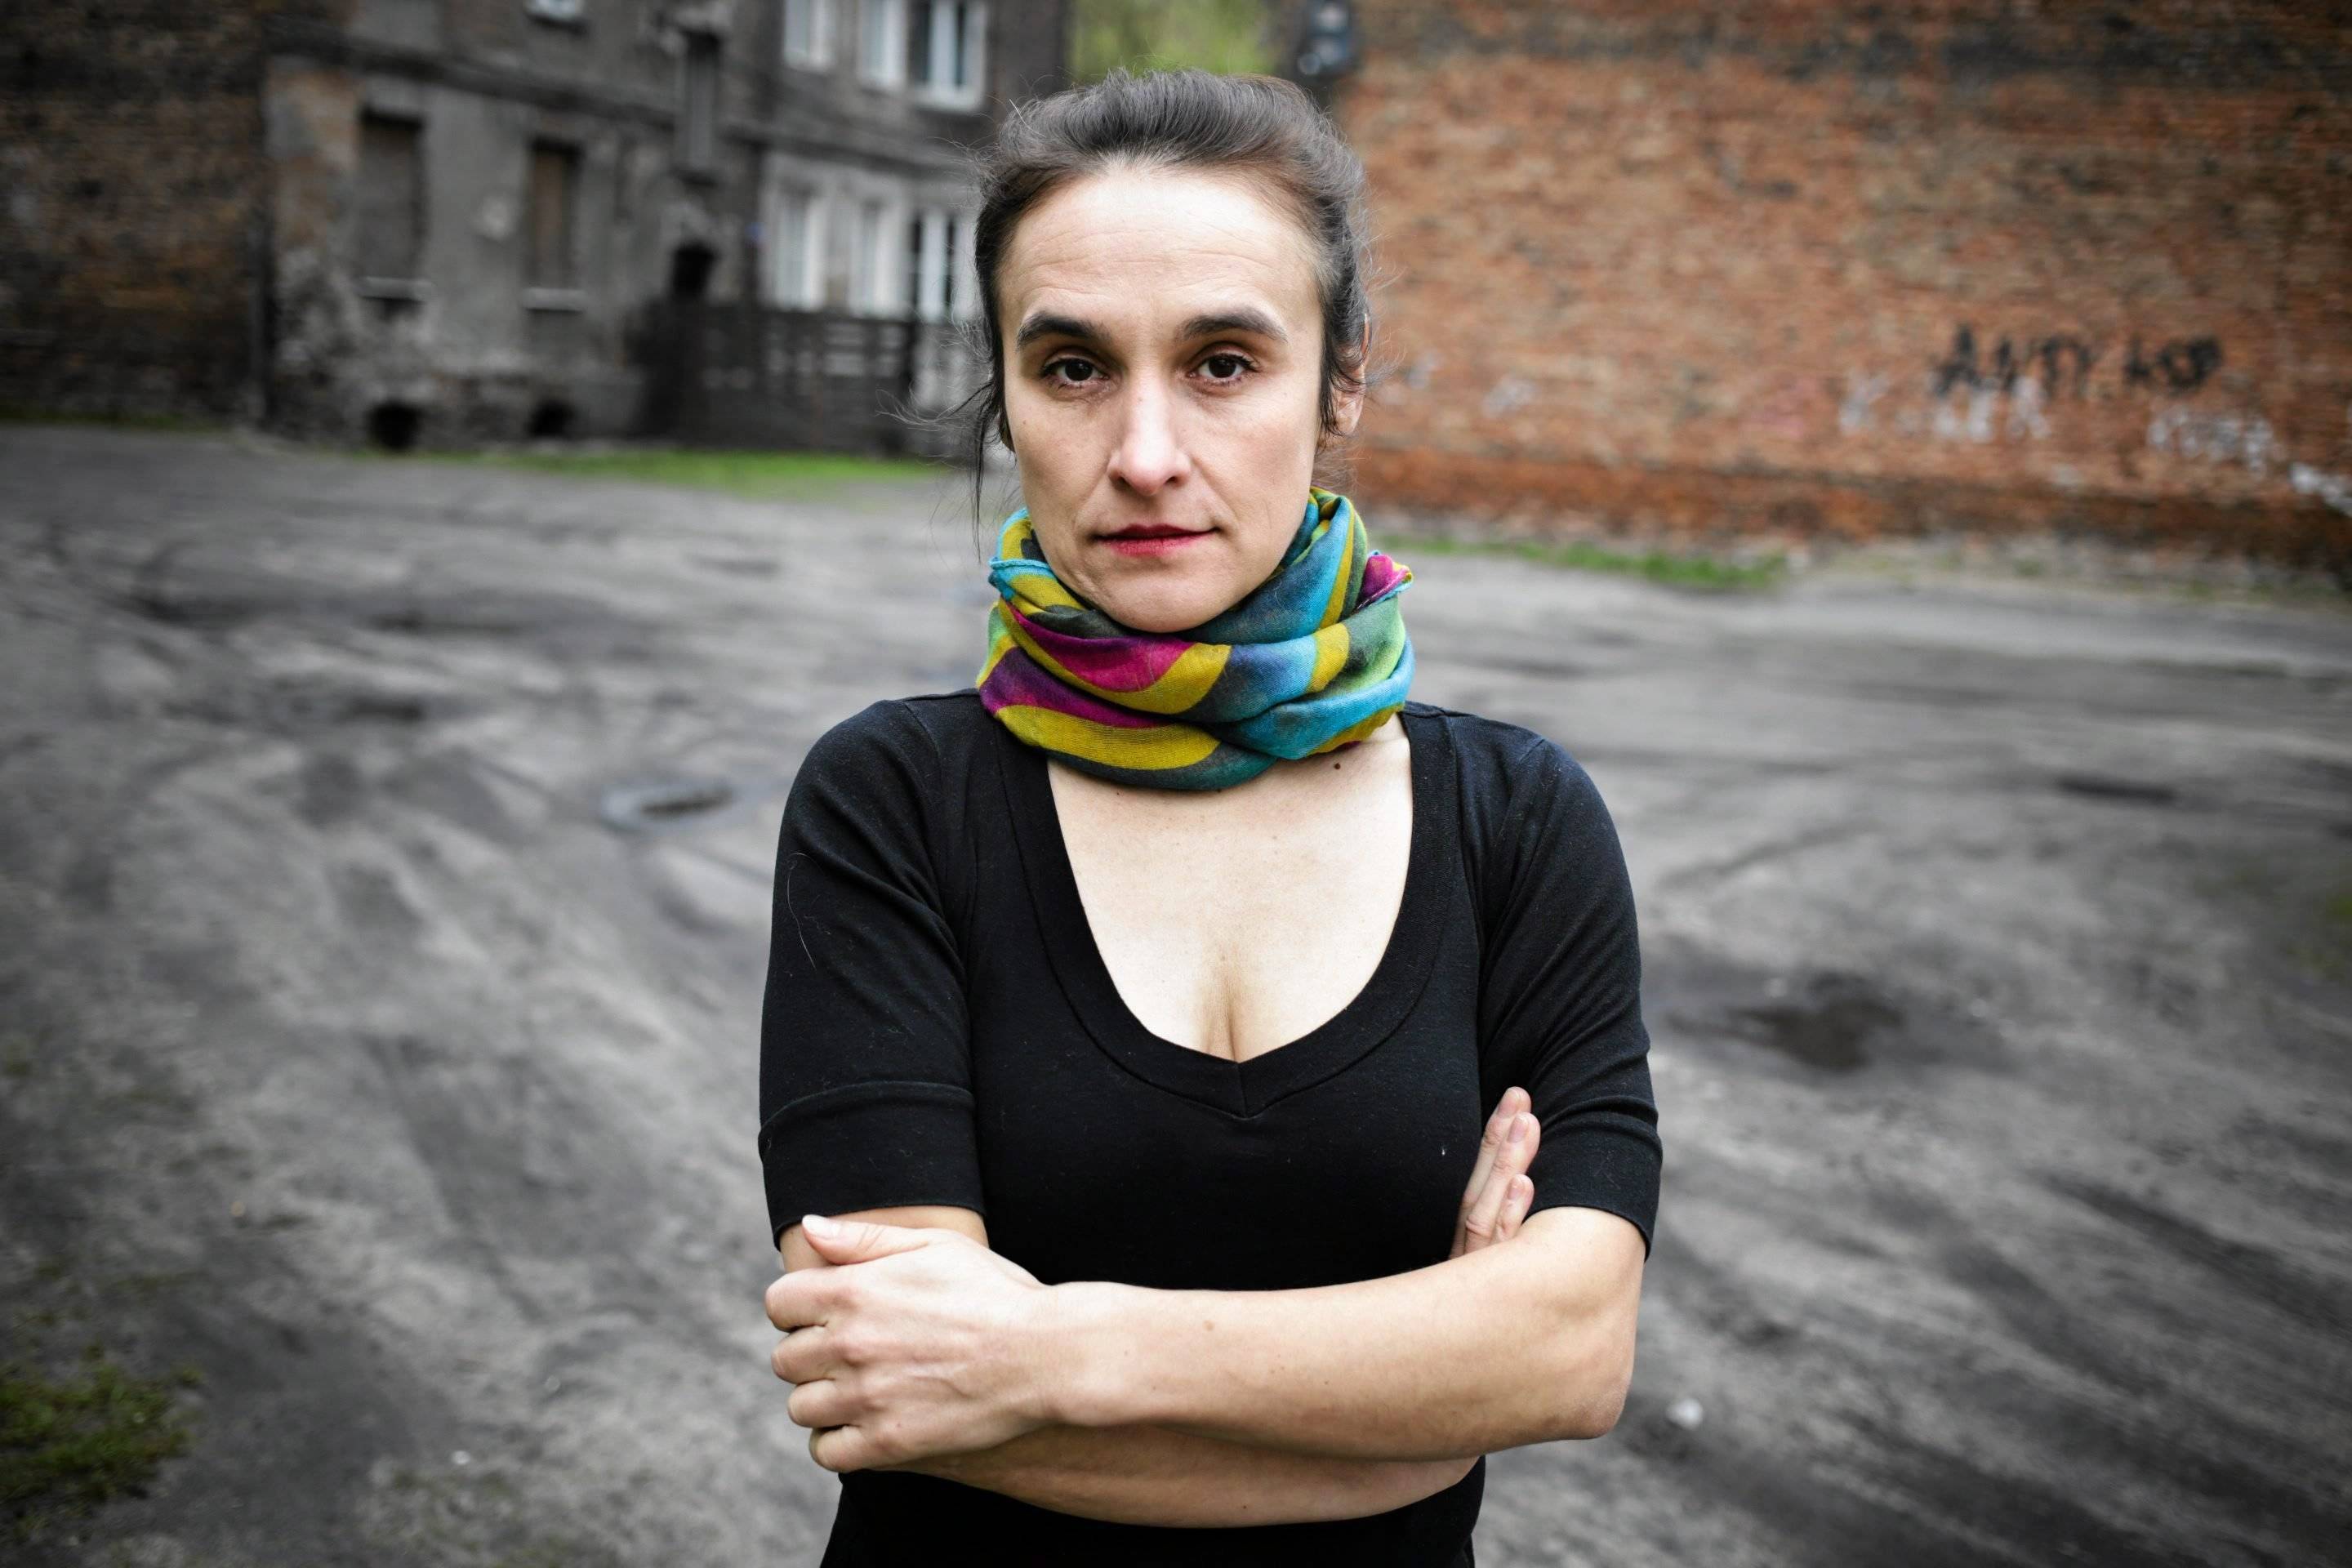 Aneta Prymaka-Oniszk. Na zaniedbanym miejskim podwórku stoi kobieta w średnim wieku, ciemne włosy zebrane do tyłu, szeroka chusta zamotana na szyi, czarna bluzka z dekoltem, ręce założone przed sobą. Mniejszość białoruska